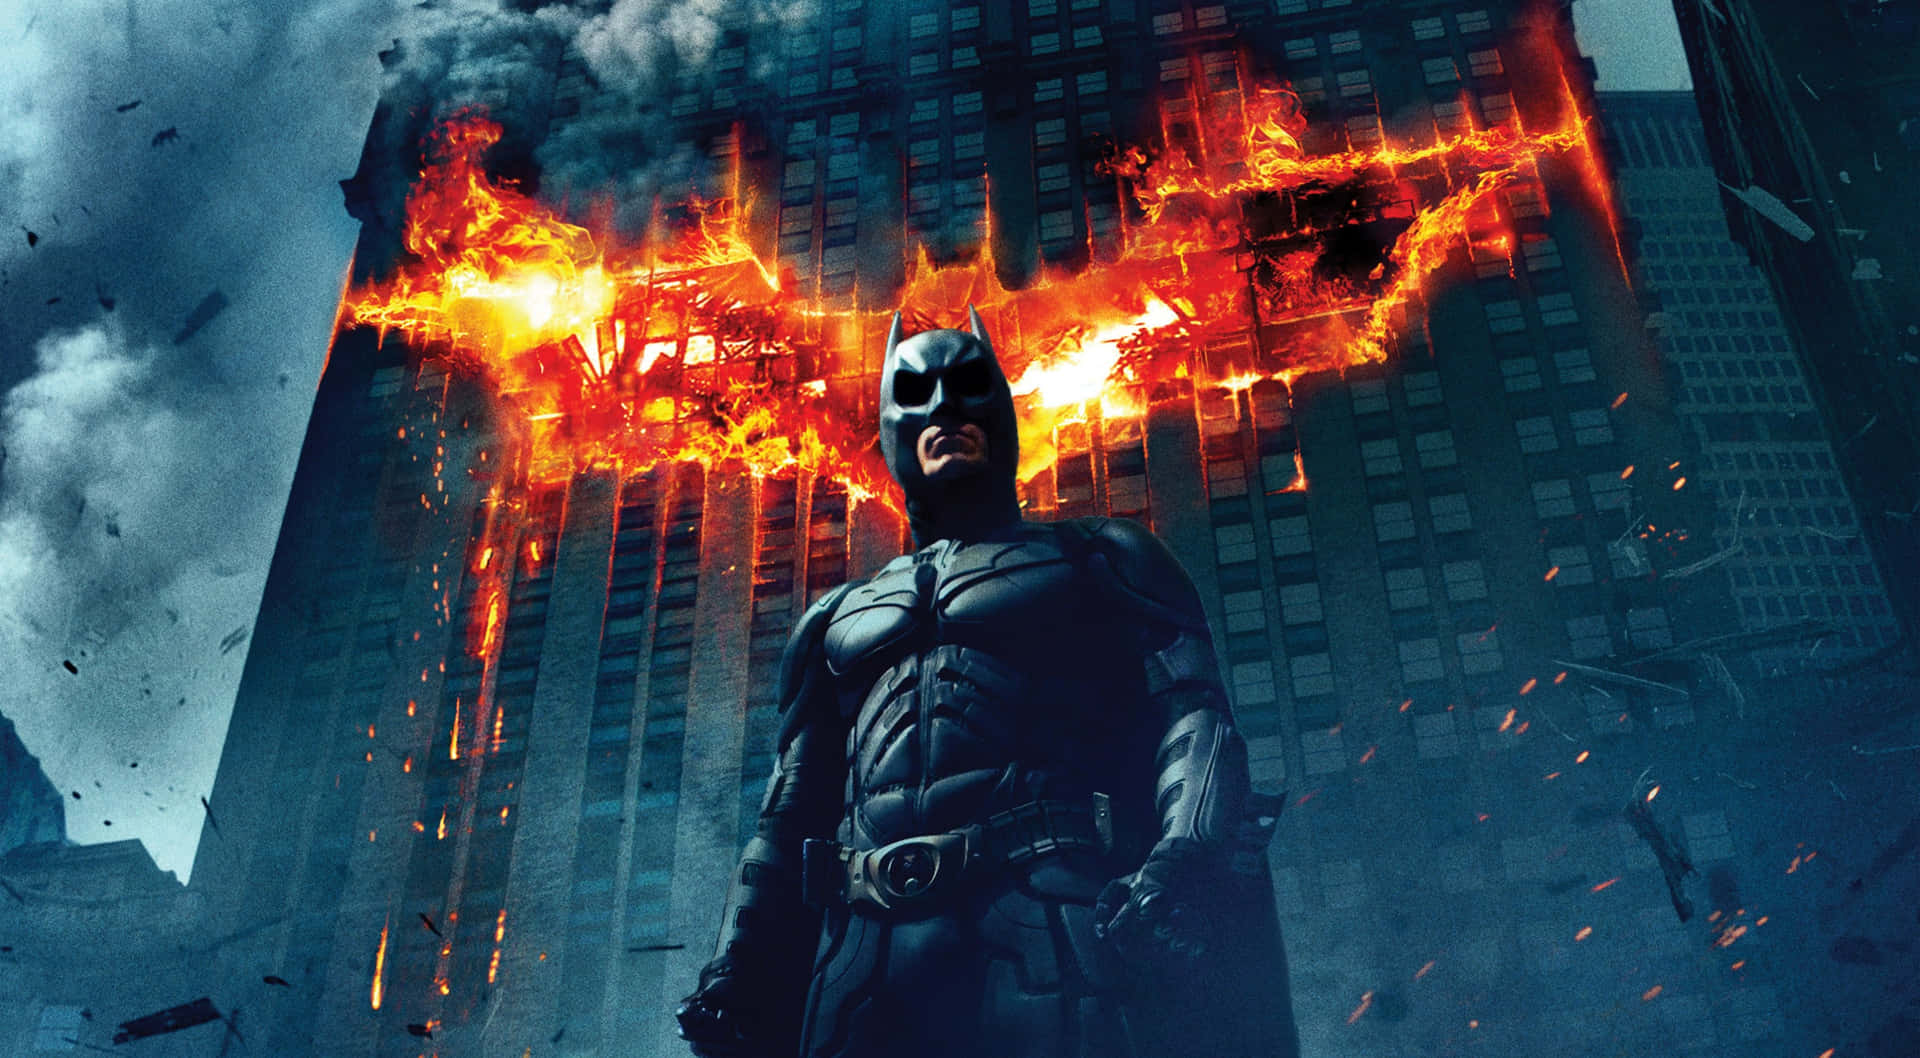 Batmanfledermauslogo Brennt In Gebäudebild.